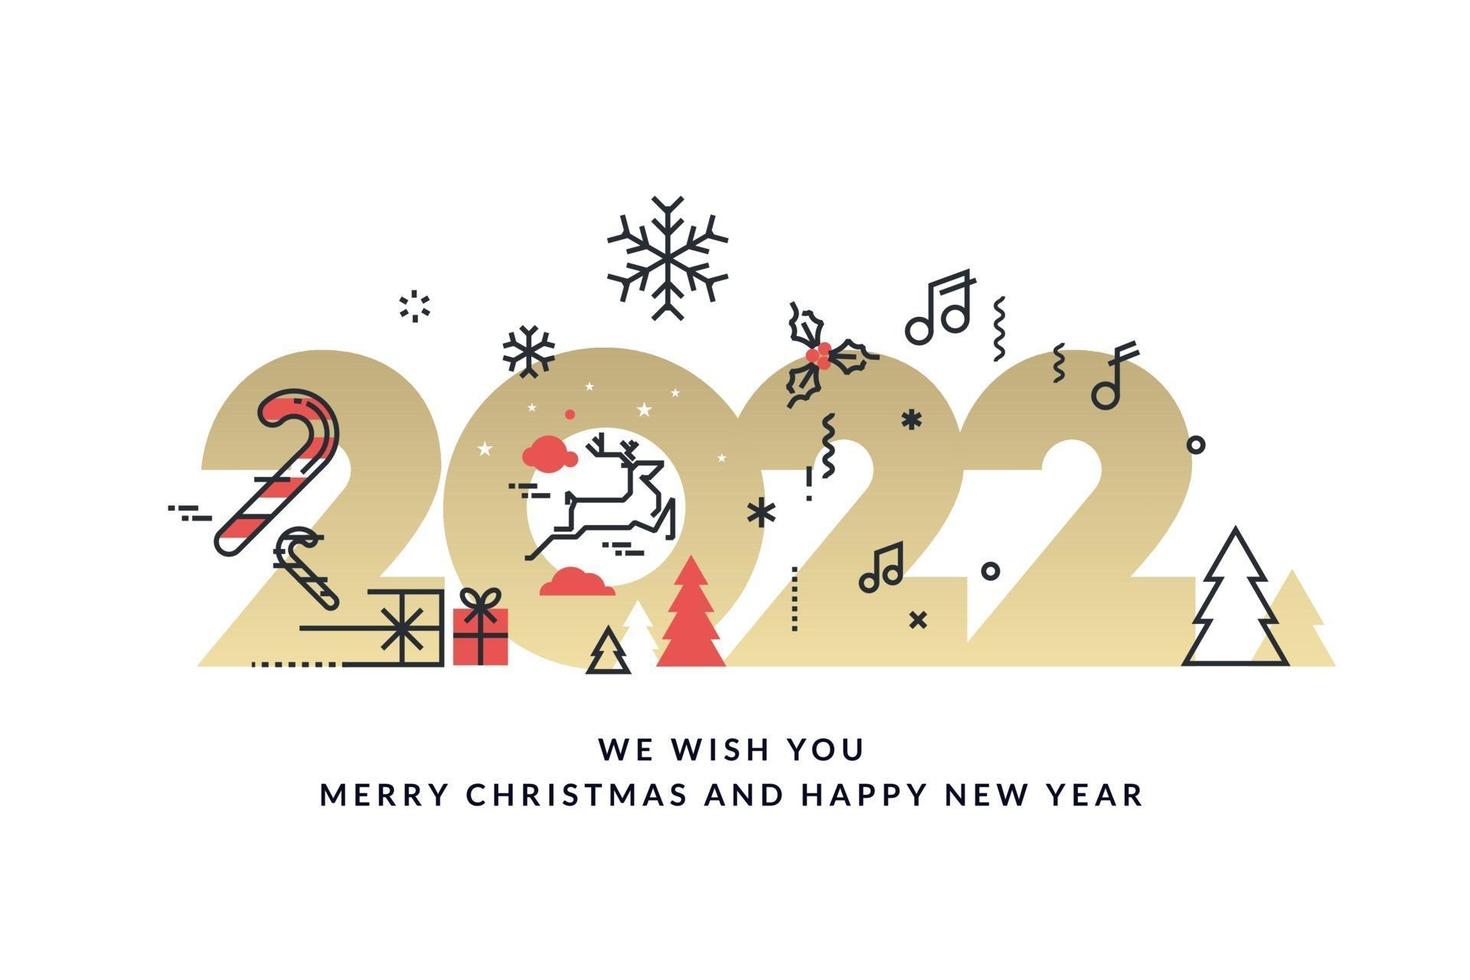 Thiệp chúc mừng giáng sinh và năm mới 2022